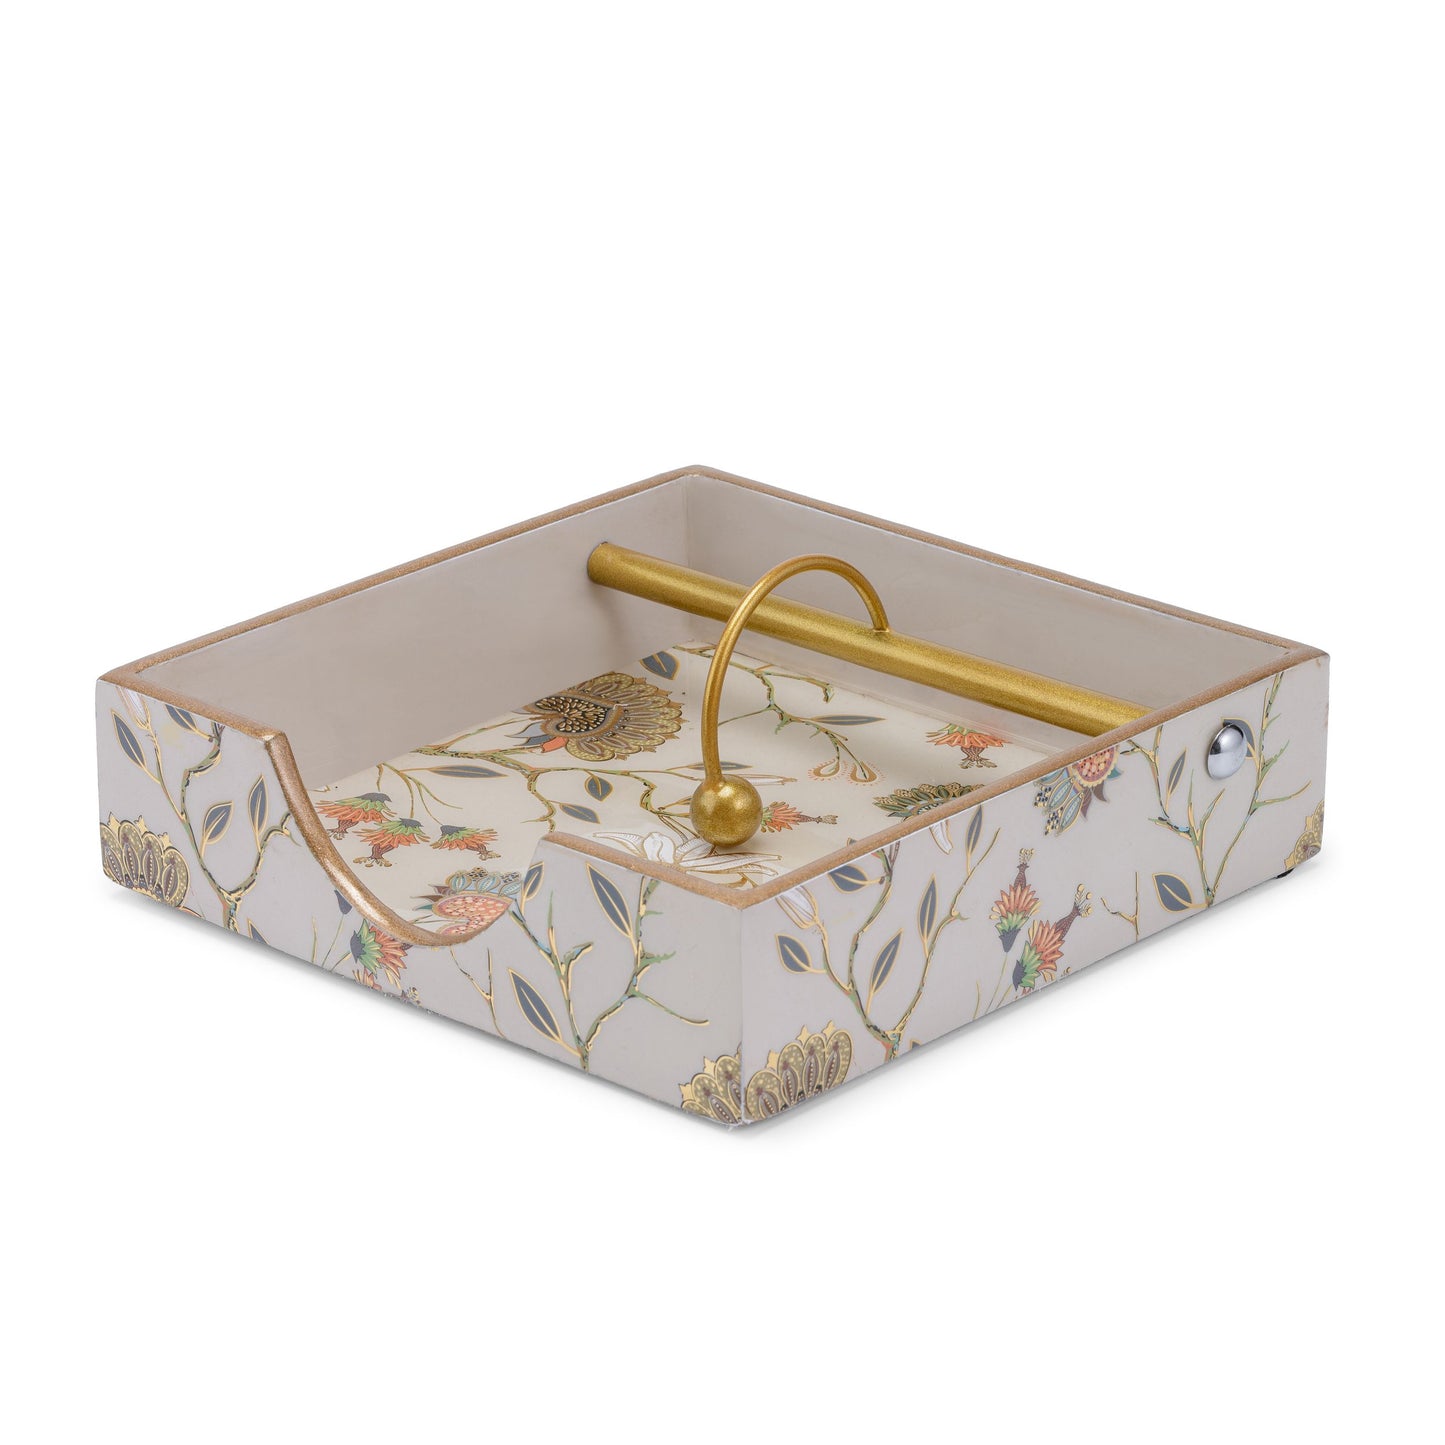 -Gardenia exotica - Square tissue holder- 7.5”x7.5” -Single-